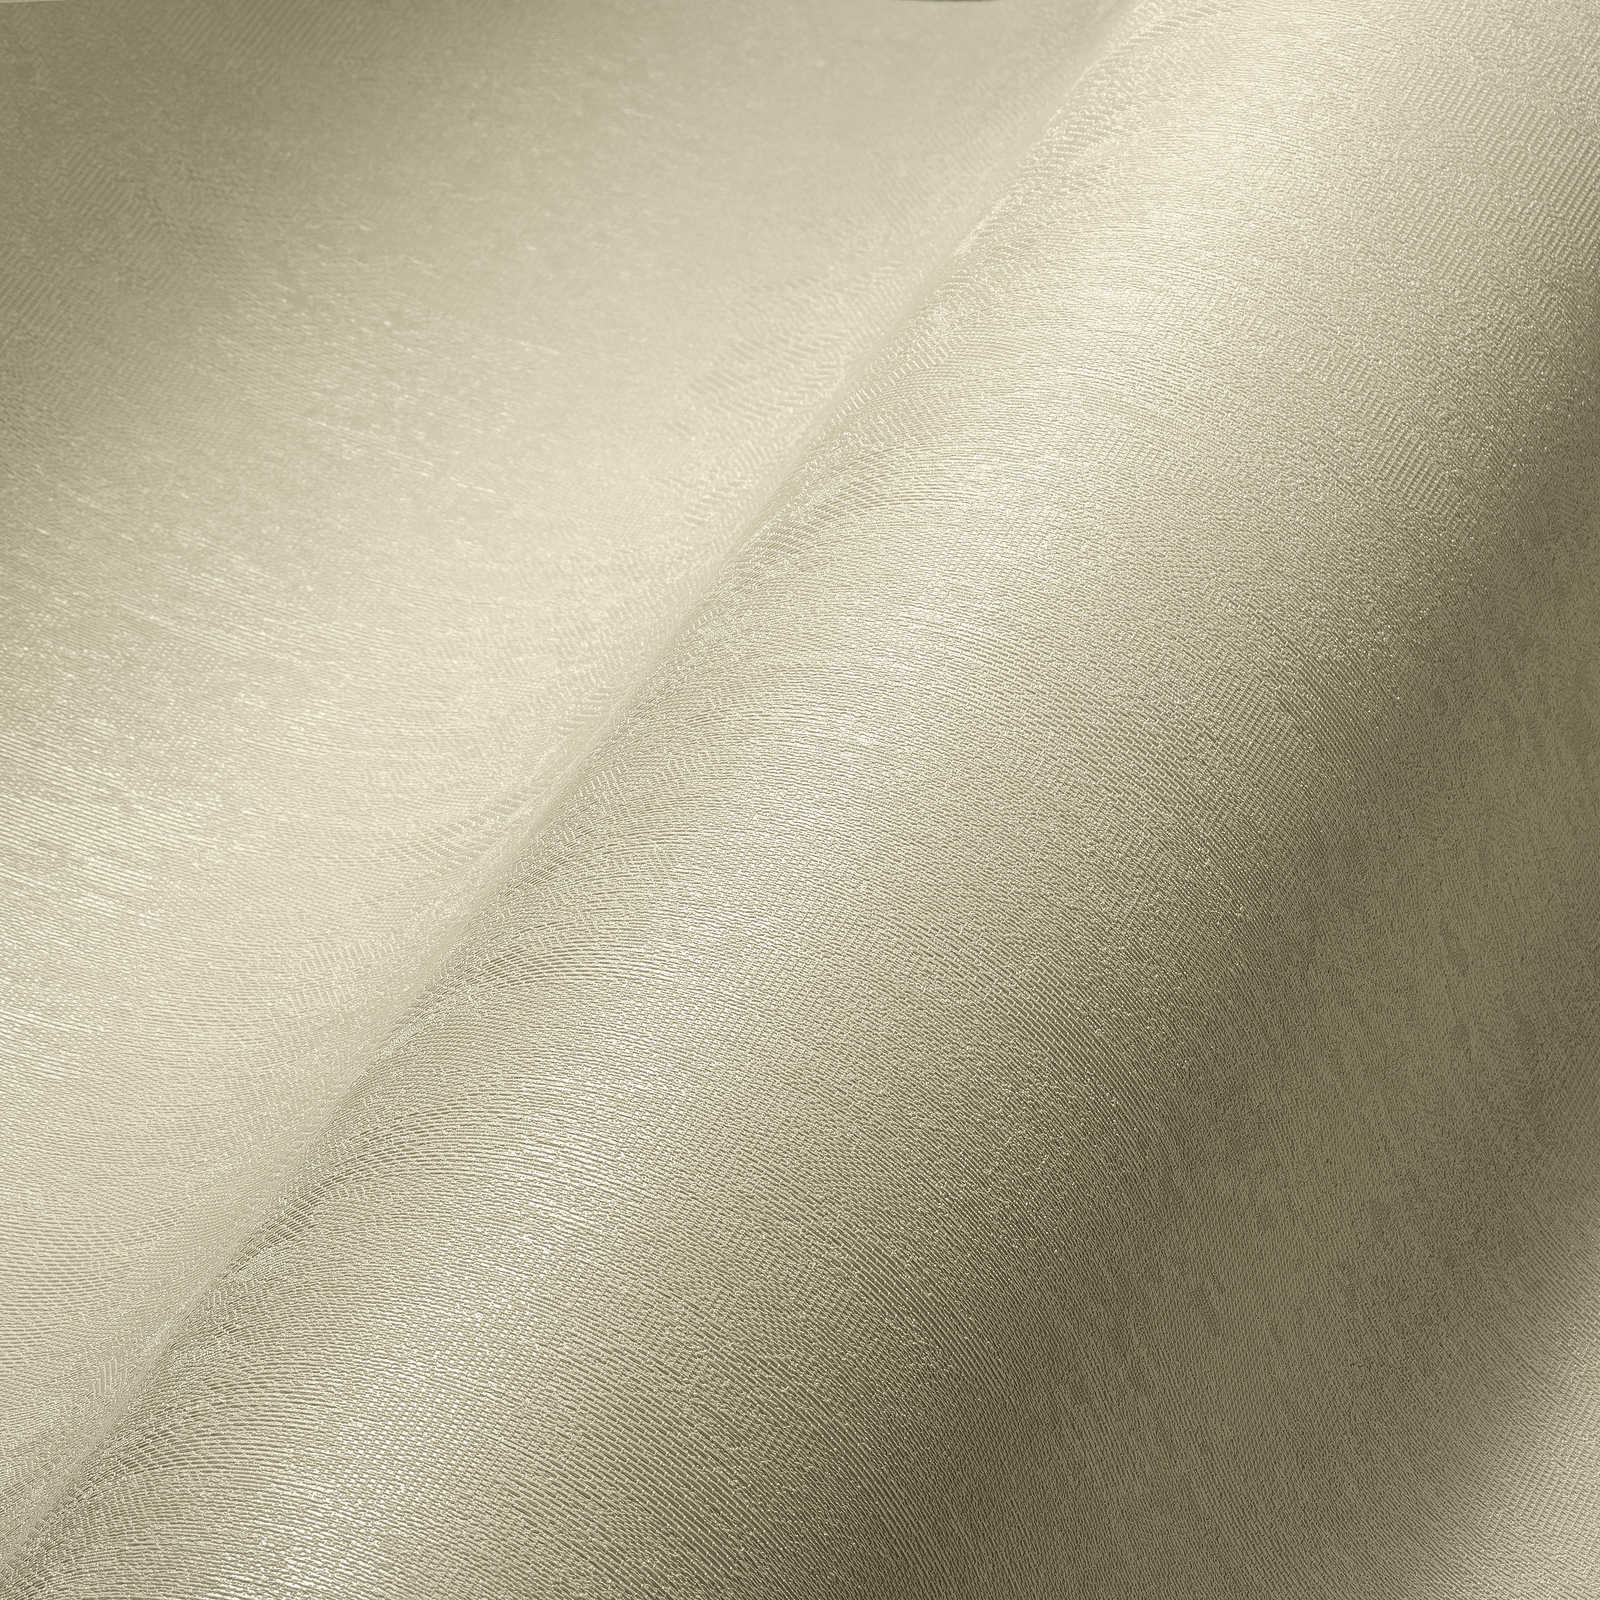             papier peint en papier uni neutre avec surface structurée - crème
        